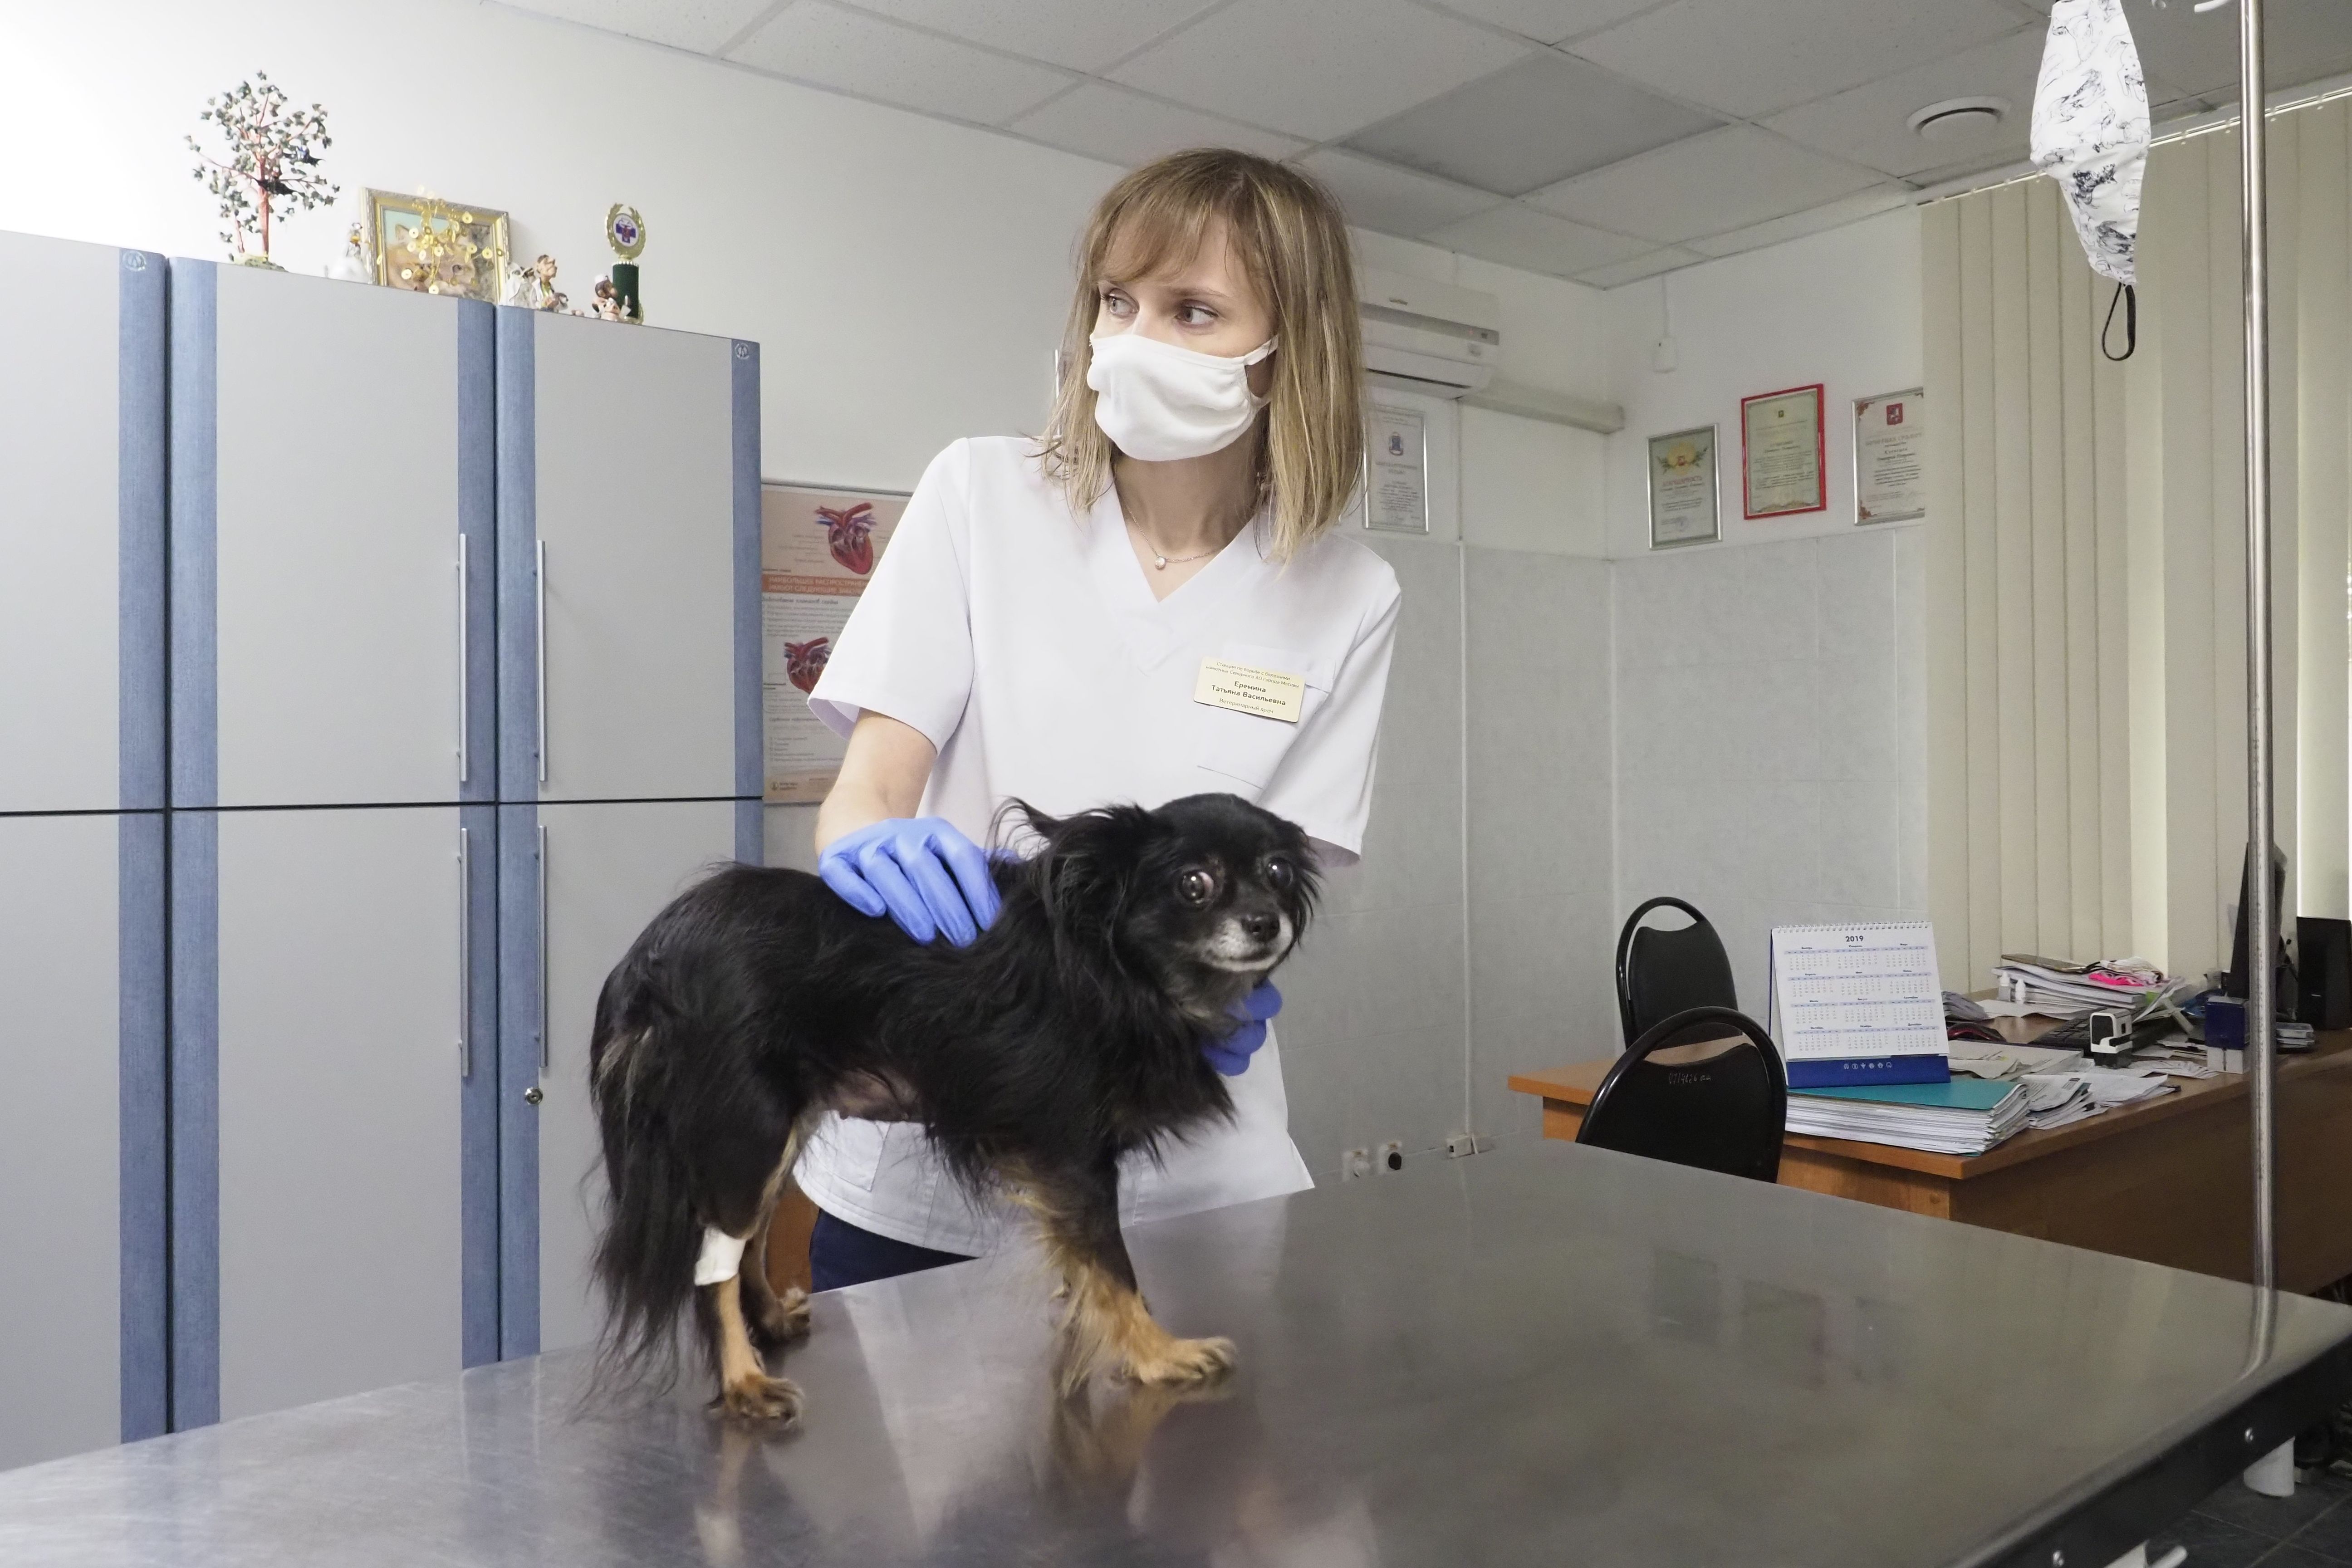 26 мая 2020 года. Ветеринар Татьяна Еремина осматривает собаку Нюшу. Фото: Антон Гердо